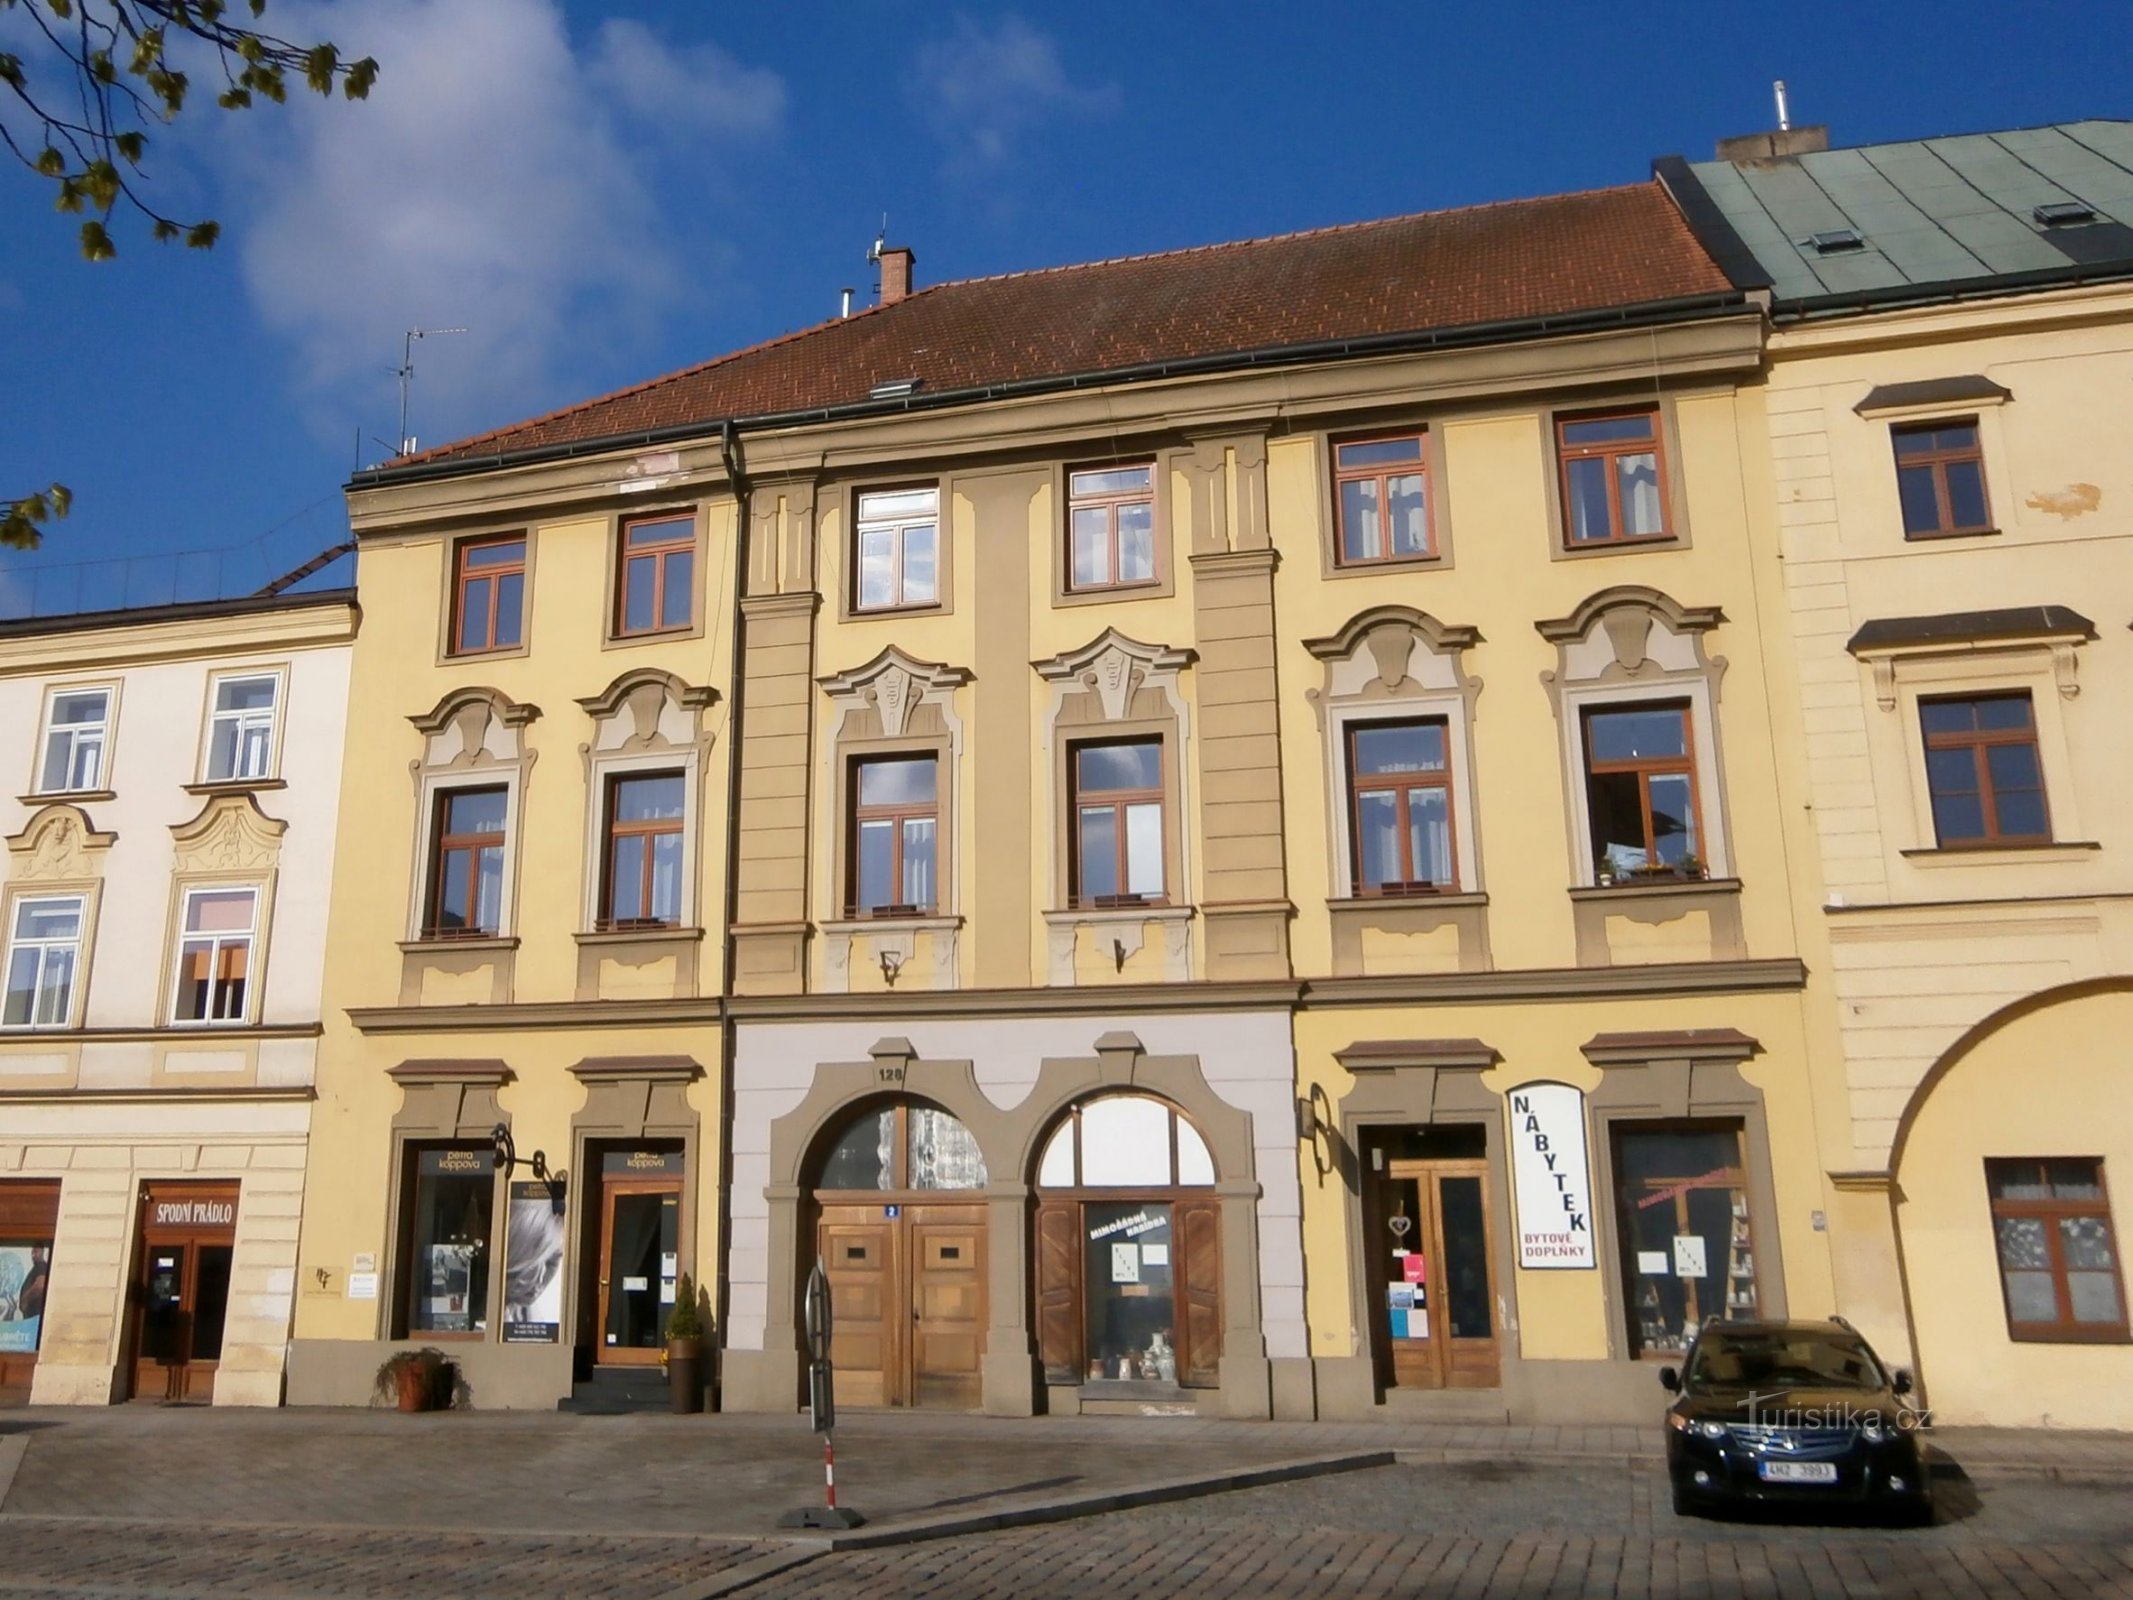 Malé náměstí n.128 (Hradec Králové, 14.4.2017 aprile XNUMX)